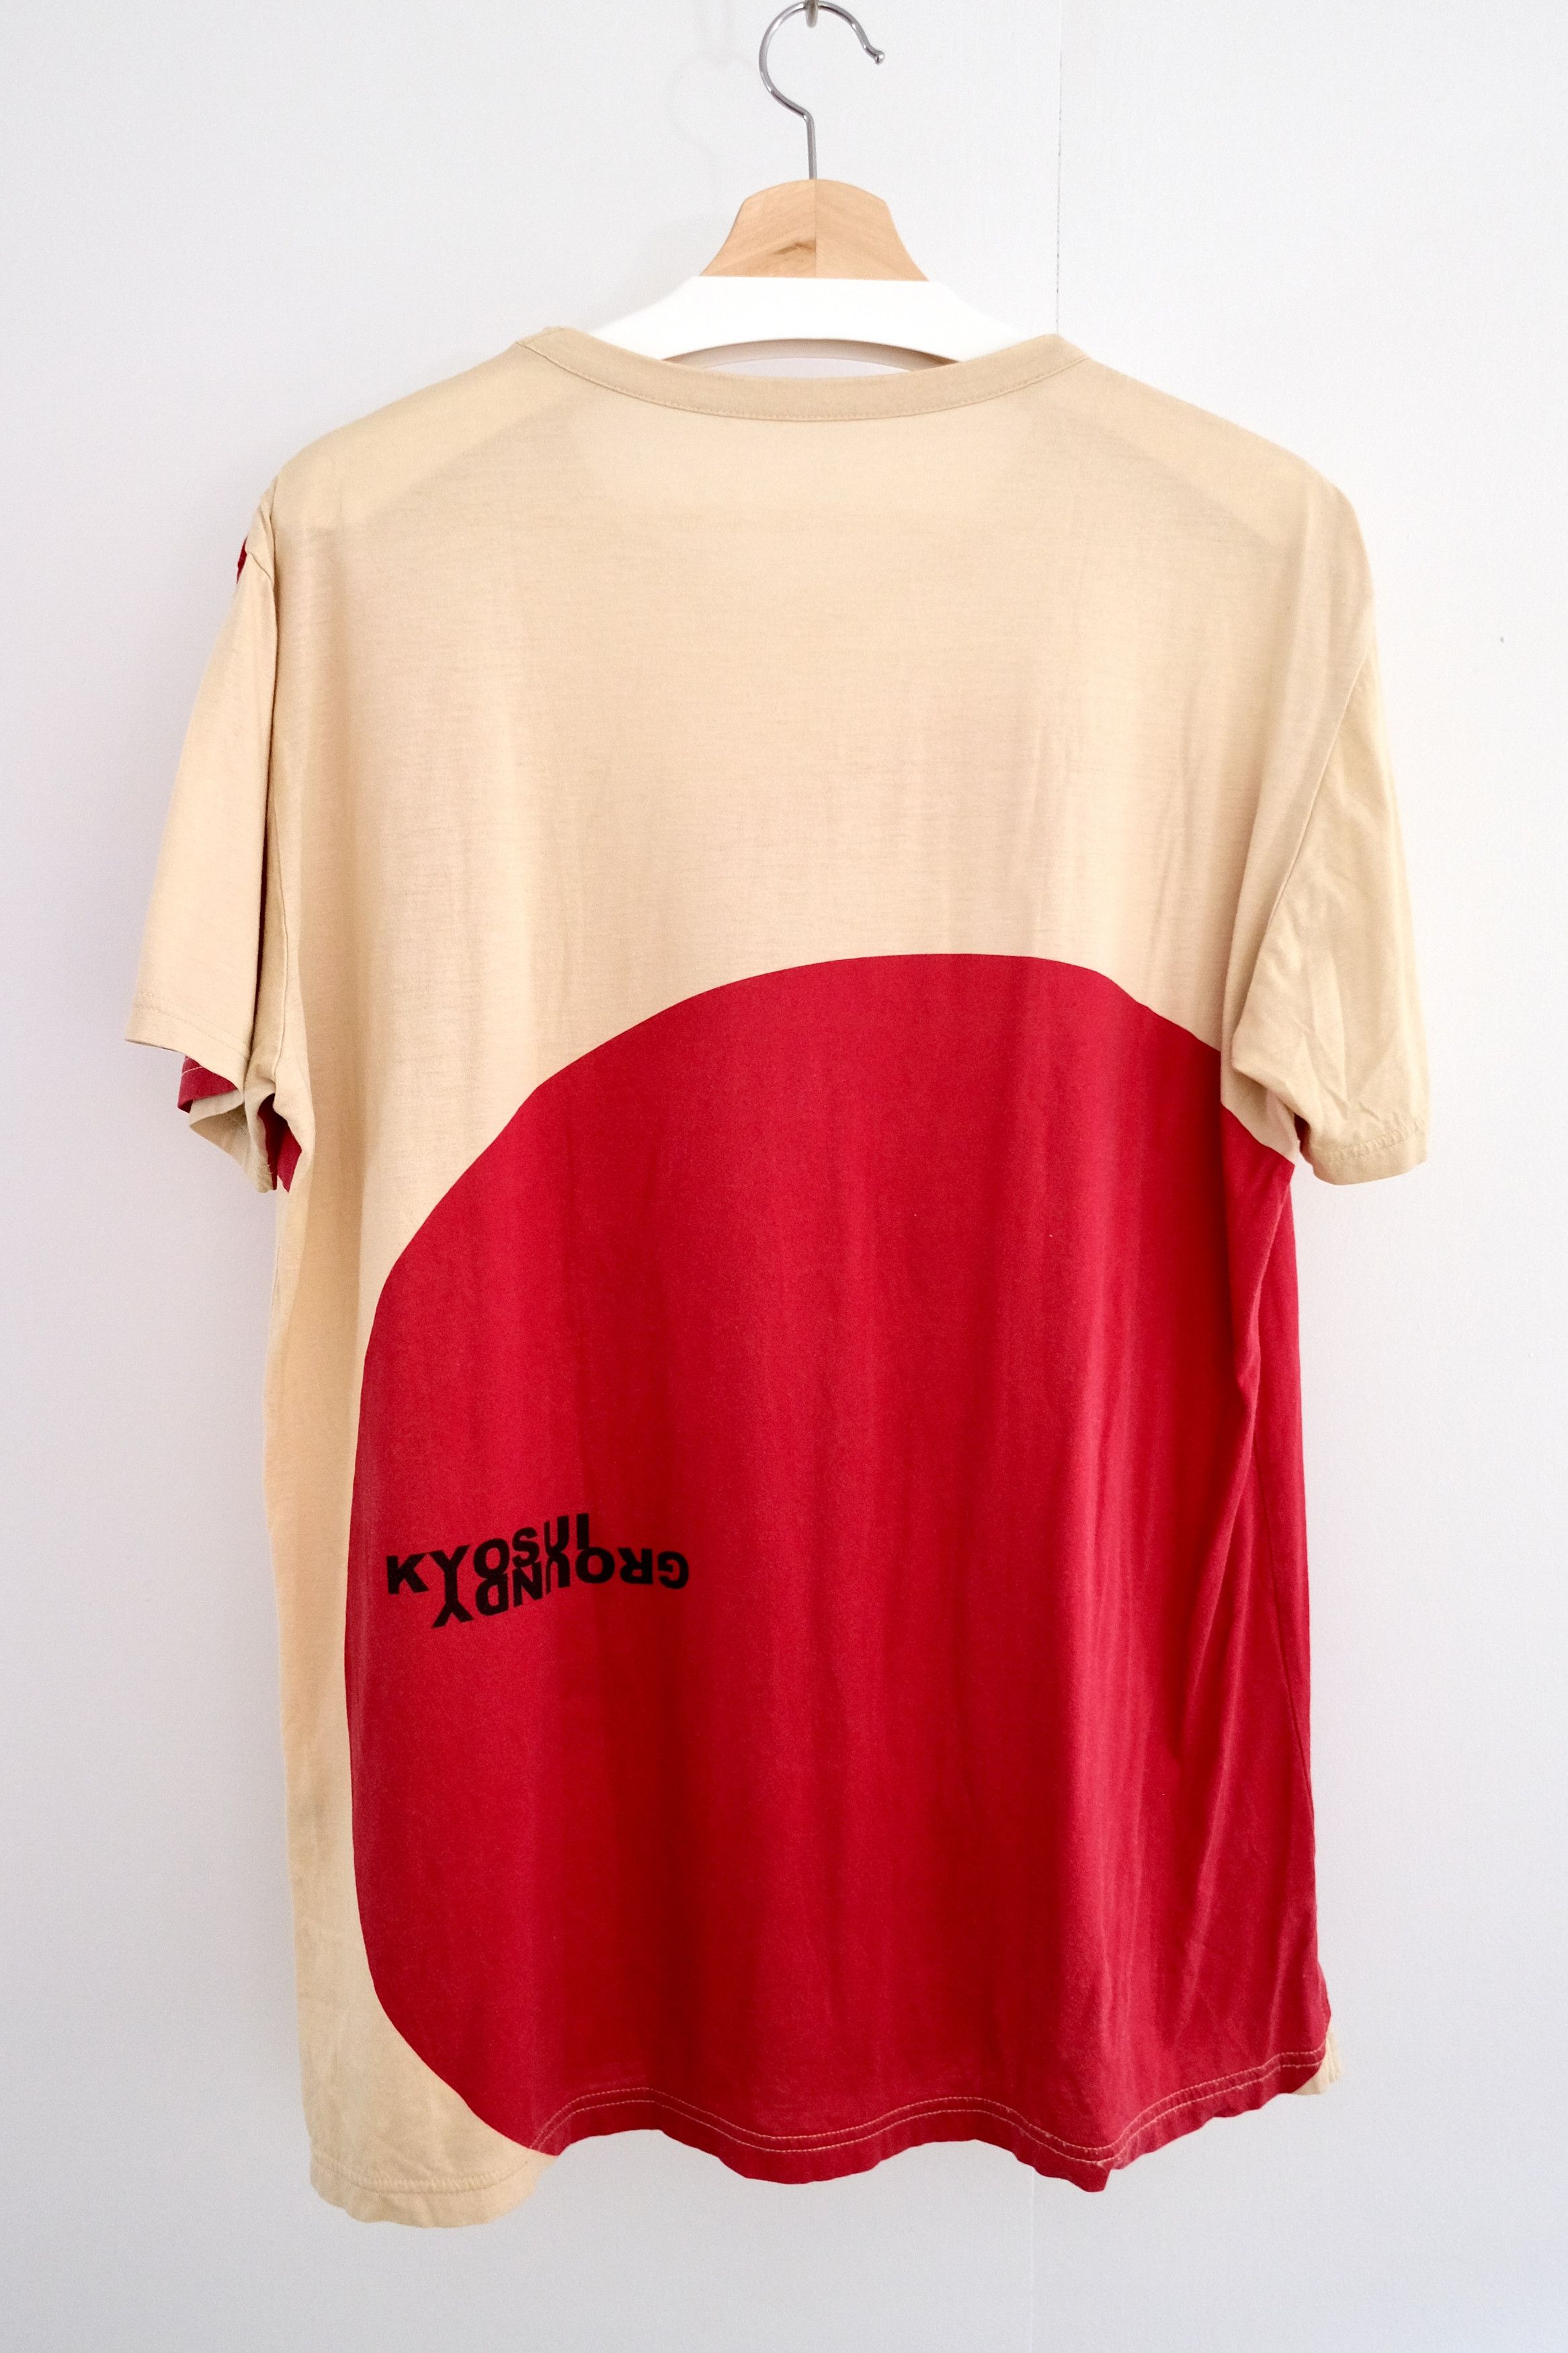 🎐 2020 Kawanabe Ukiyo-e Shirt - 7